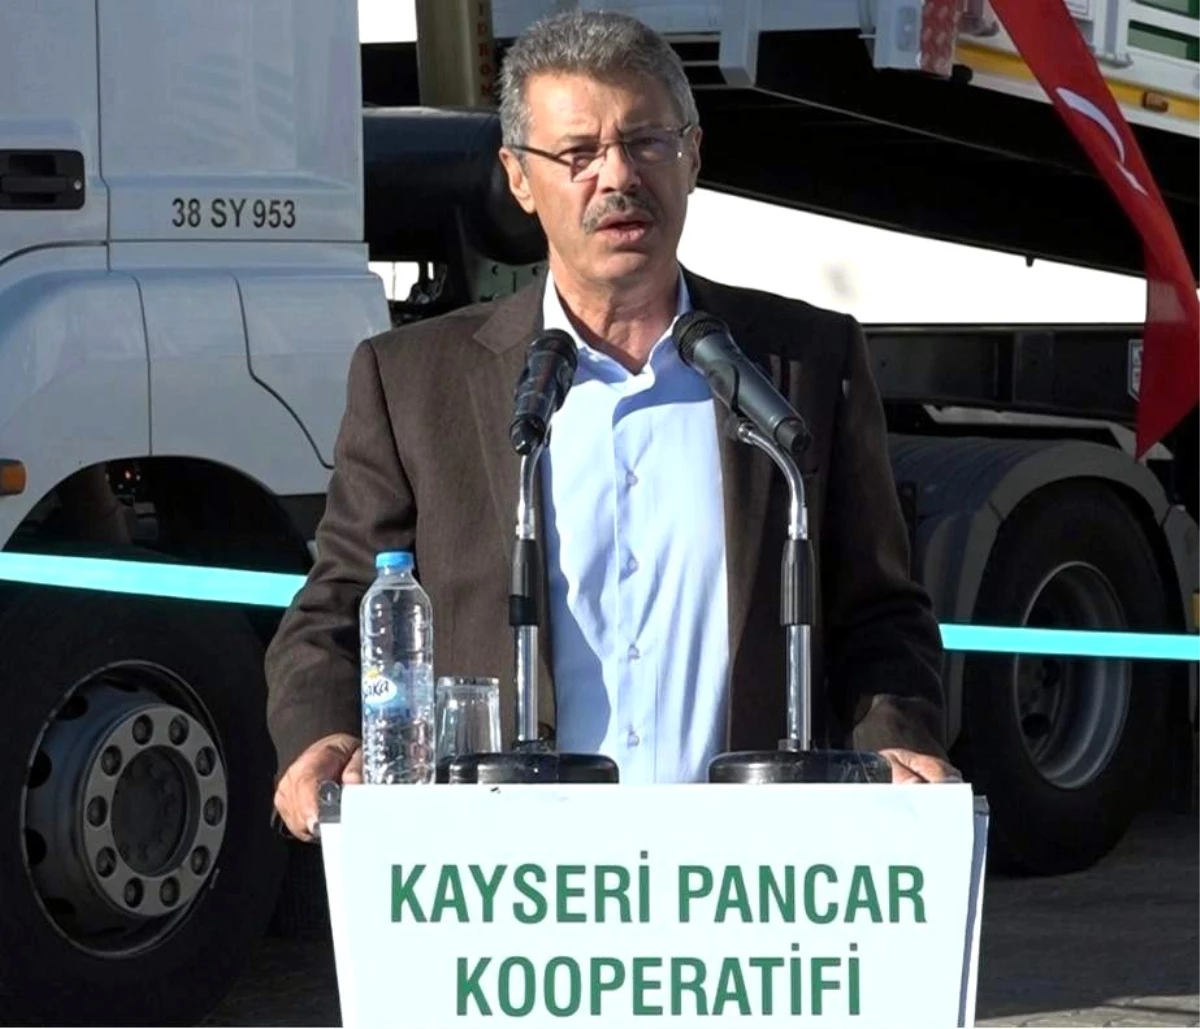 Kayseri Pancar Kooperatifi Yönetim Kurulu Başkanı Hüseyin Akay Açıklaması